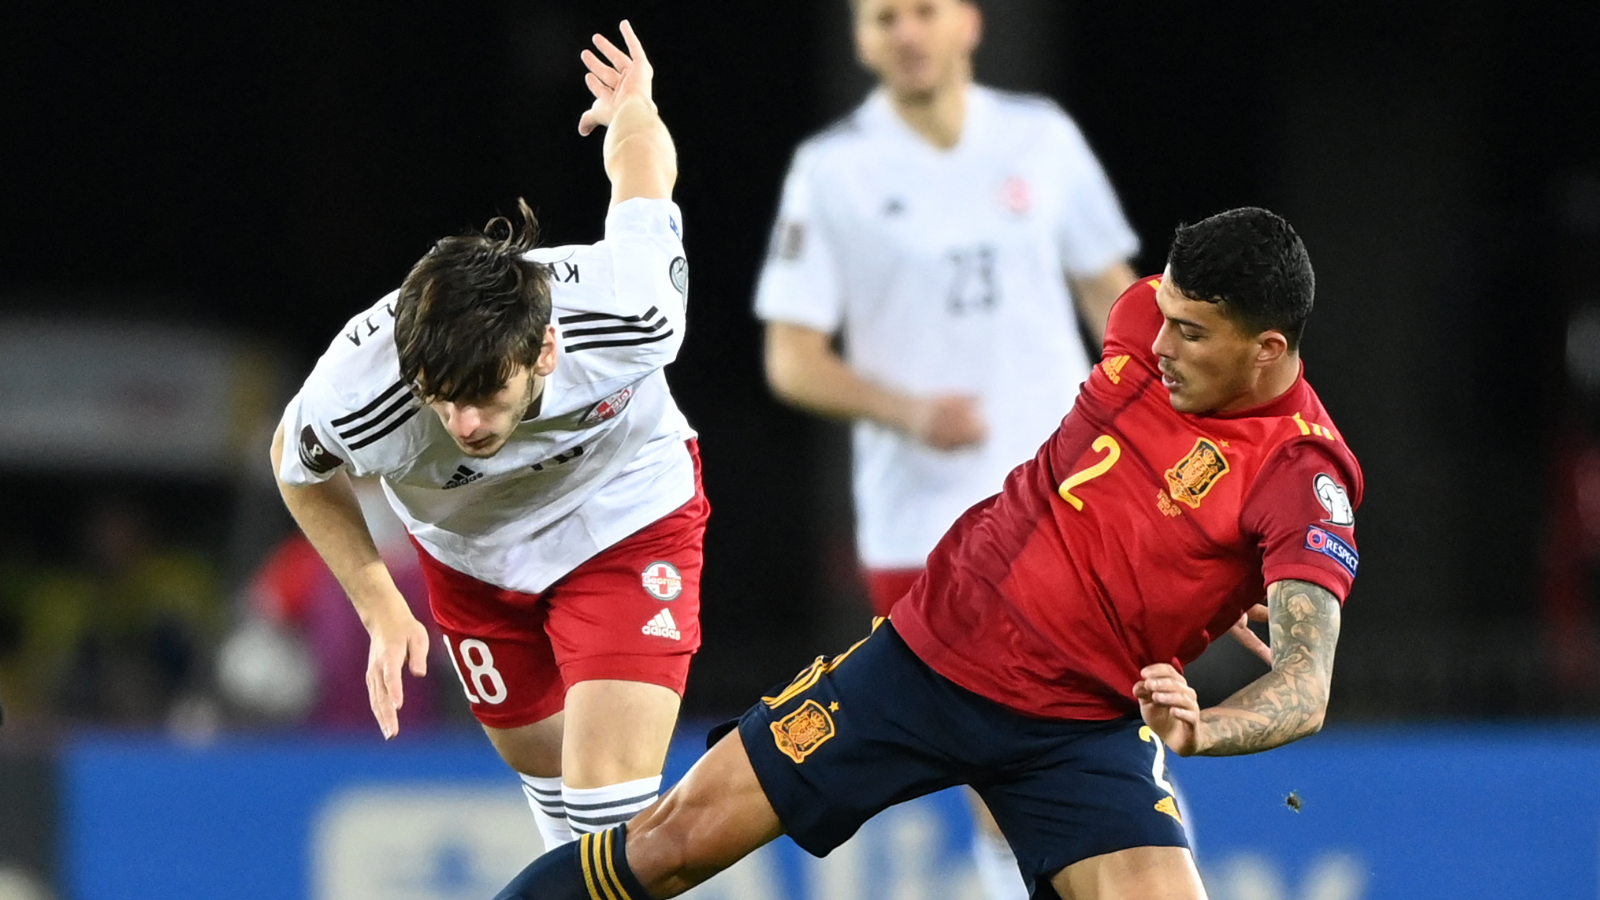 Quién es Pedro Porro, el jugador del Sporting Portugal que debuta con Selección española? | Goal.com Espana